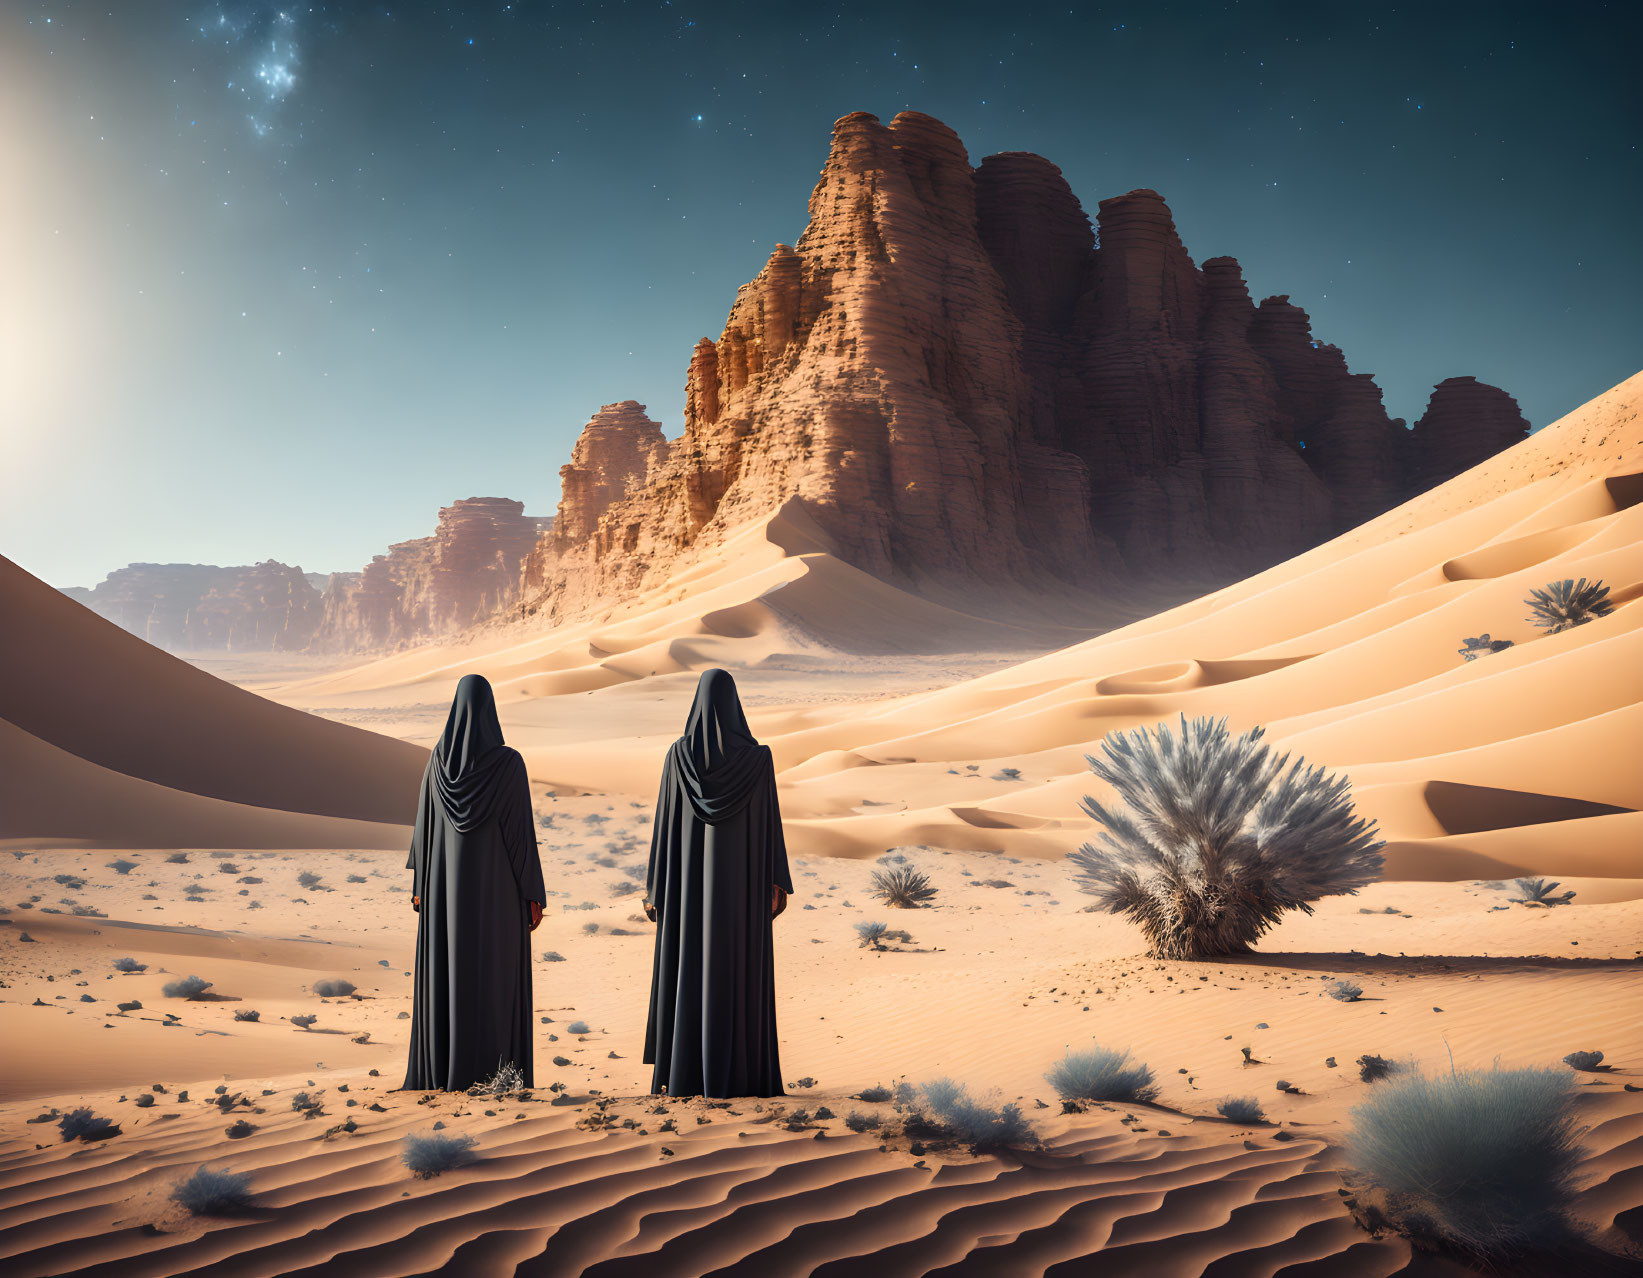 Two Black Figures in Desert Dunes Under Starry Sky